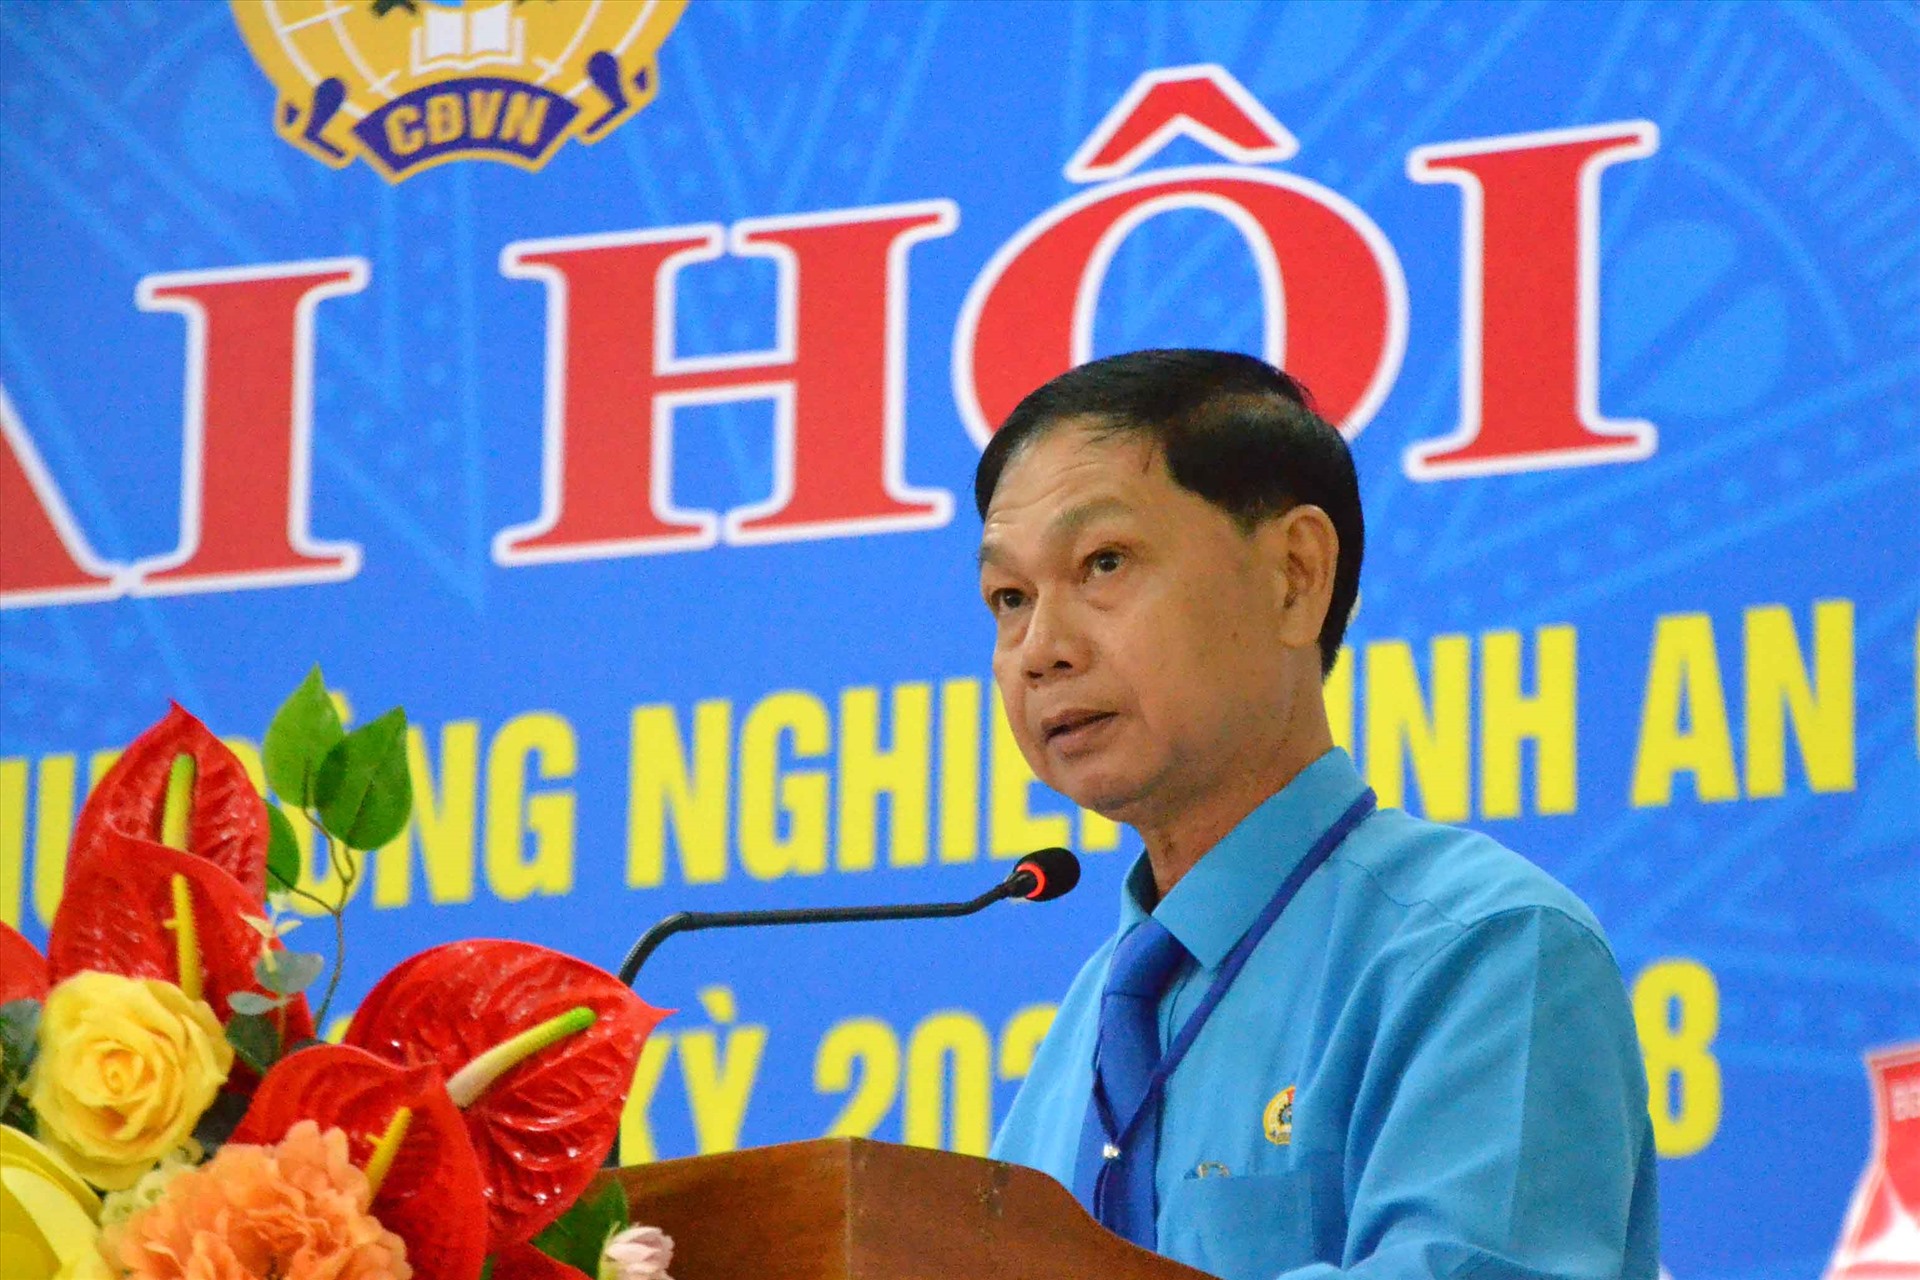 Ông Trần Lưu Phong tái đắc cử Chủ tịch Công đoàn các khu công nghiệp tỉnh An Giang. Ảnh: Lâm Điền